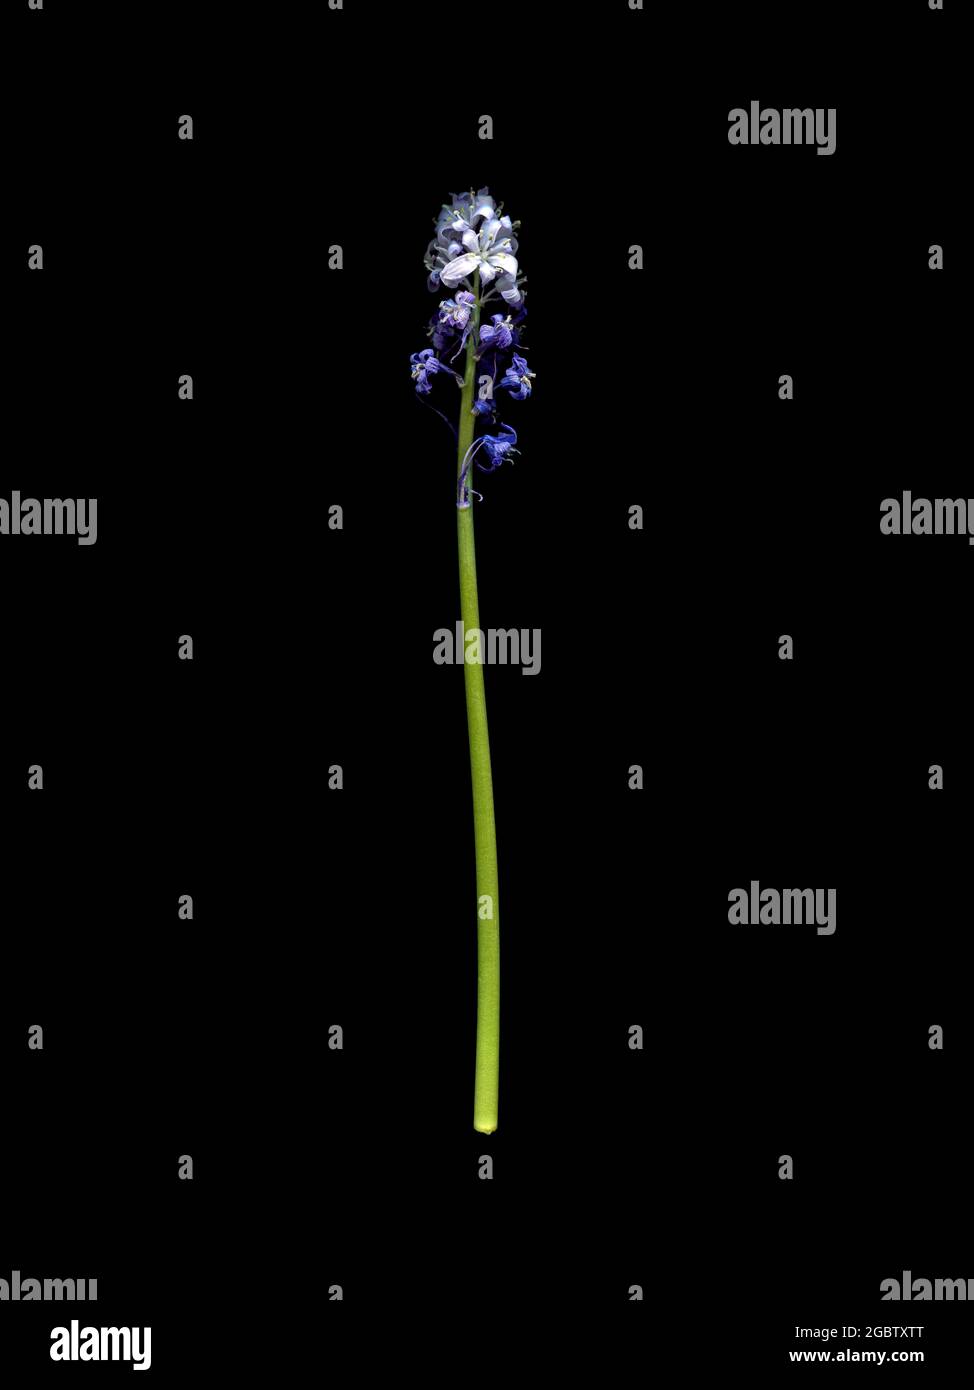 Un picco del bluebell comune, un giacinto selvaggio, passato il suo meglio, e insolito in quanto porta fiori sia viola che bianchi. Foto Stock